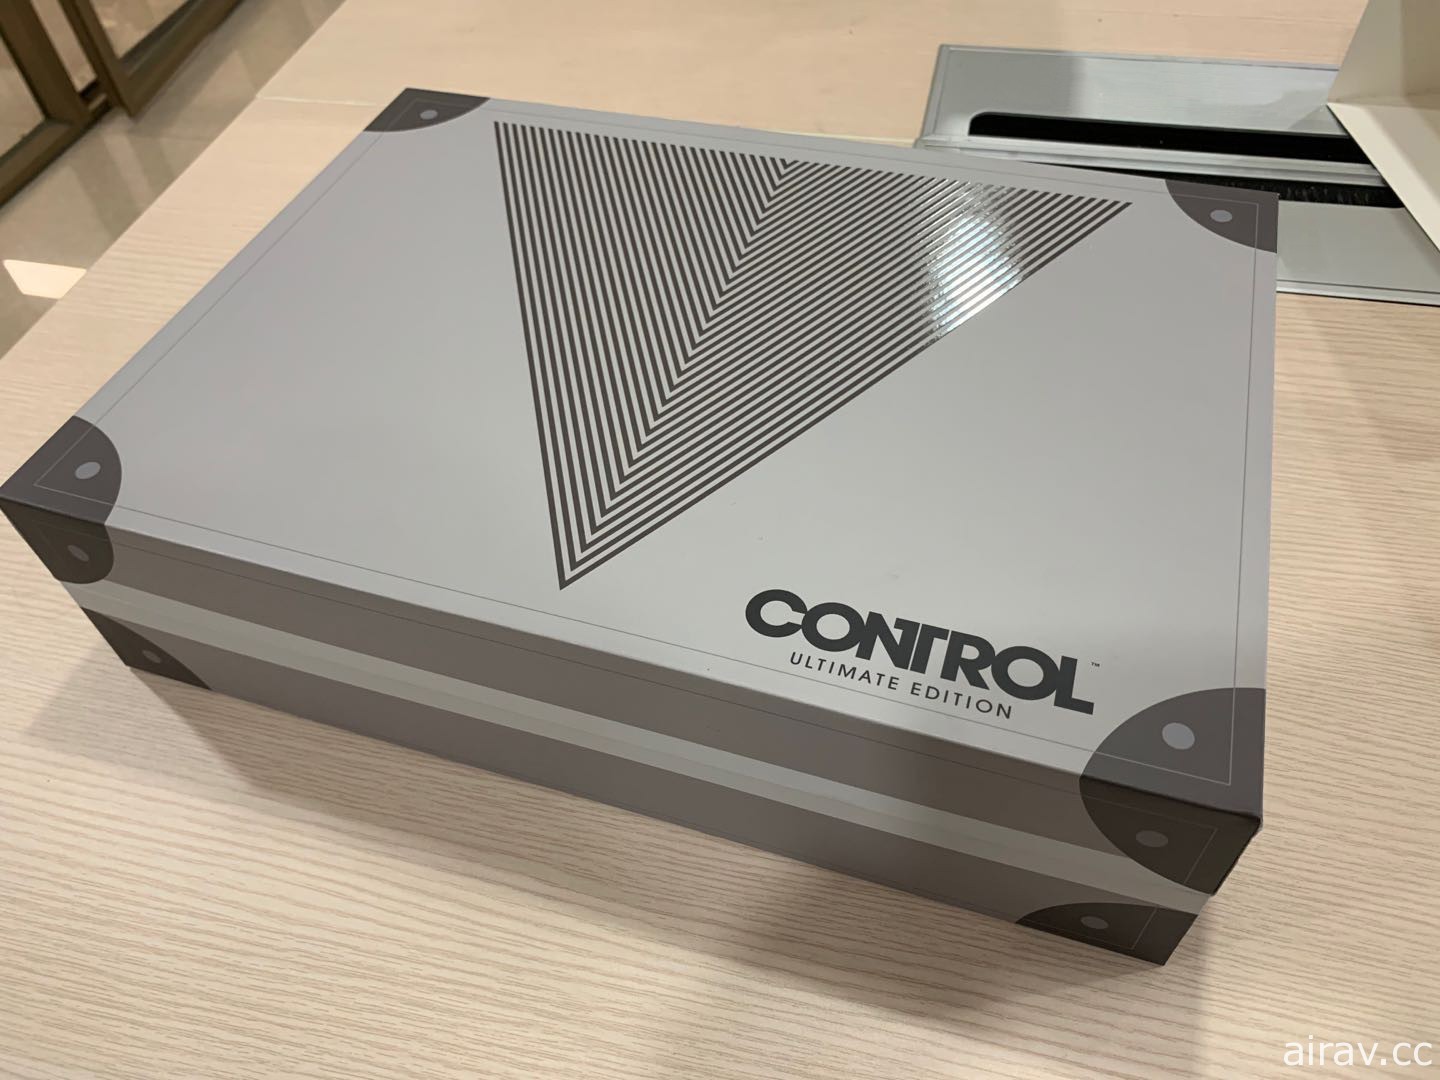 《控制 CONTROL 终极版》亚洲完全数量限定版抢先开箱预览